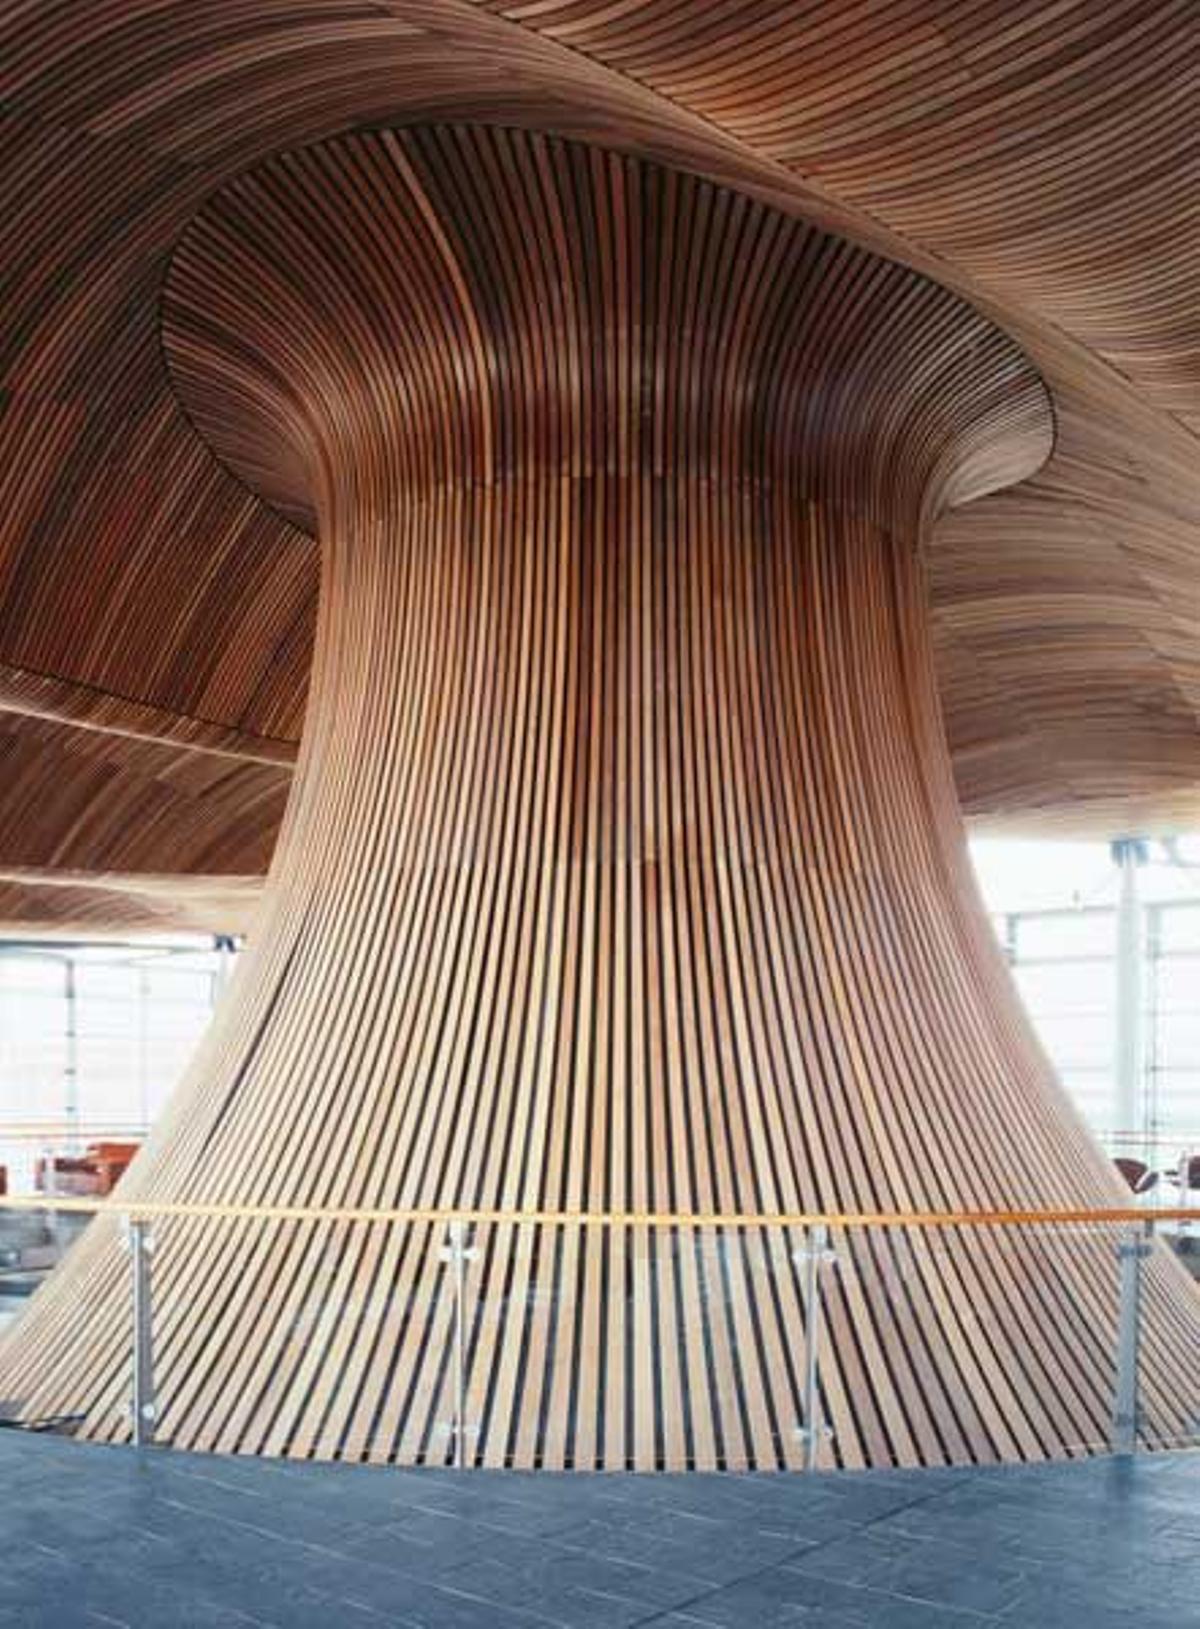 Panel de madera ondulada en la Asamblea Nacional de Gales.